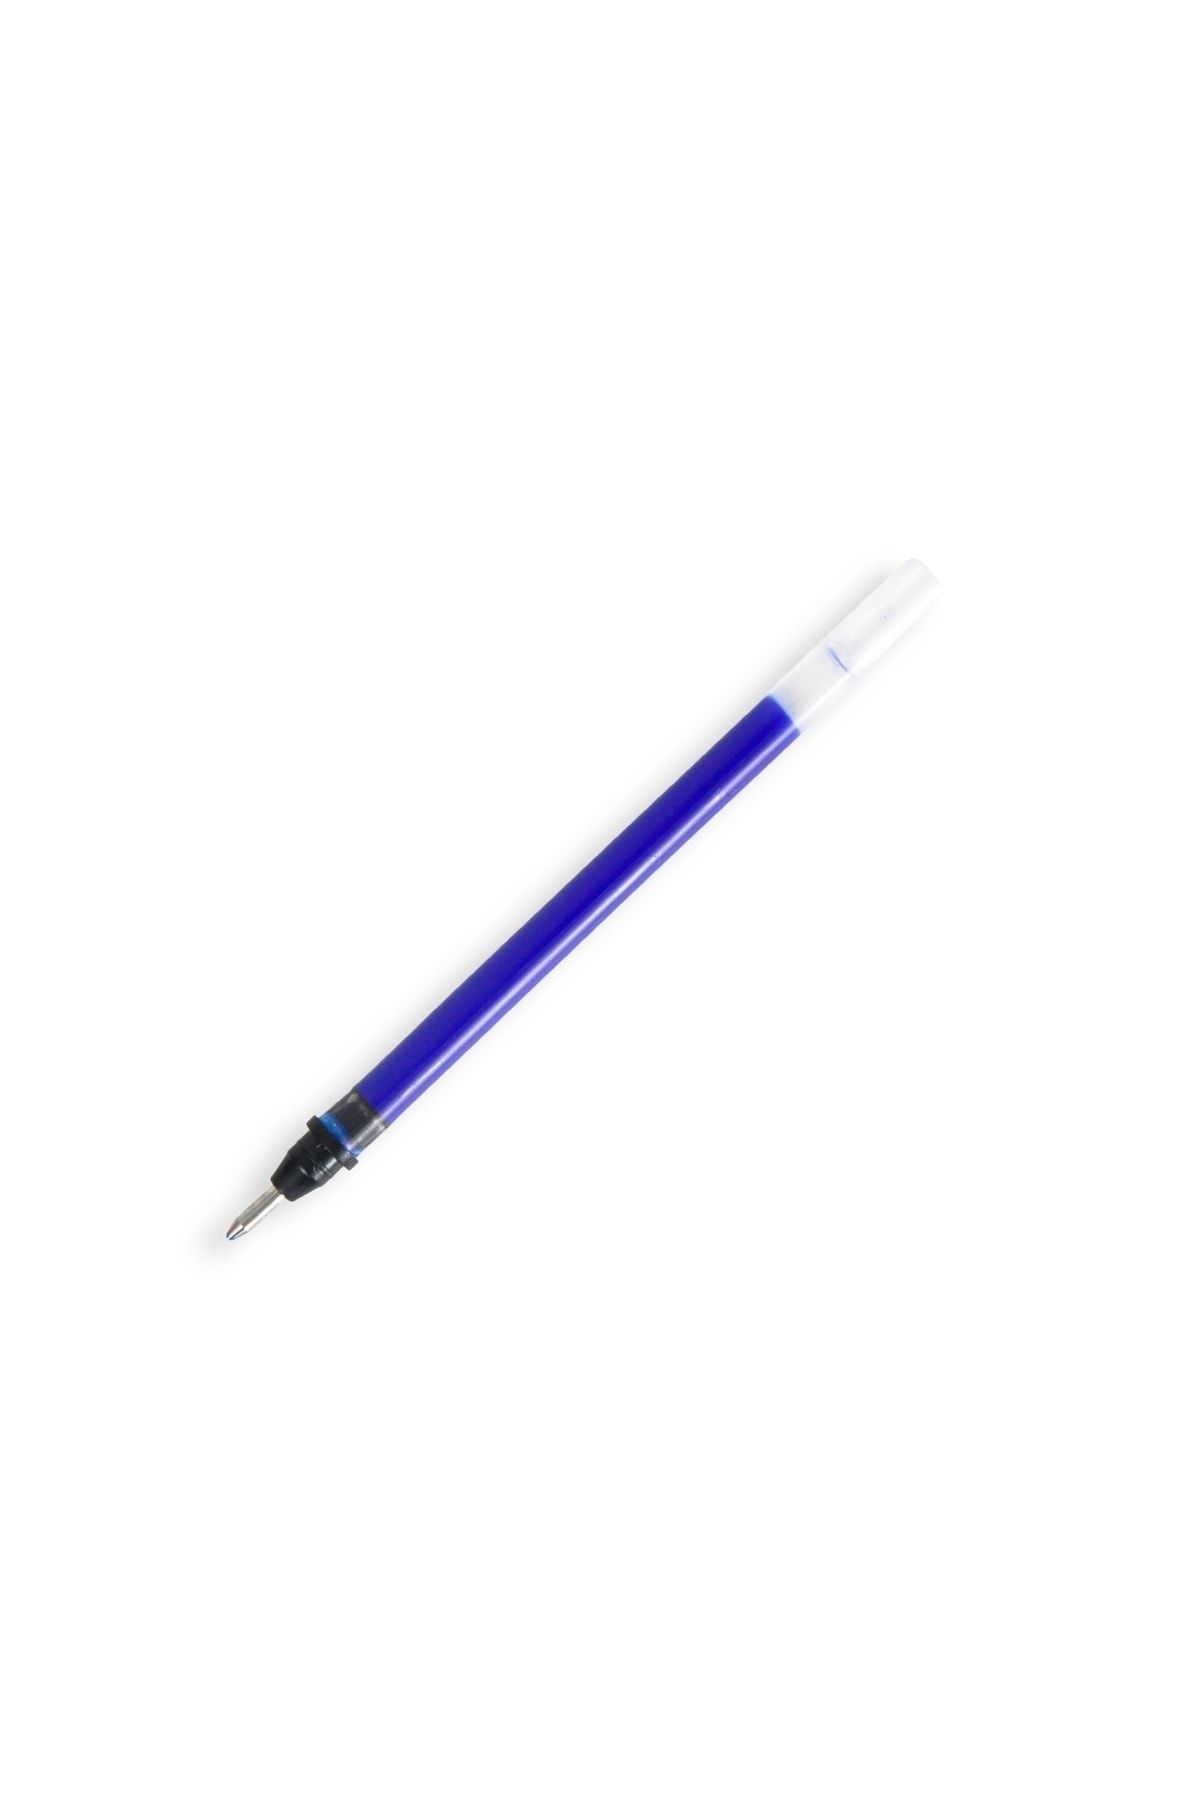 Pensan My Sign Imza Kalemi Yedeği 1.0mm Mavi